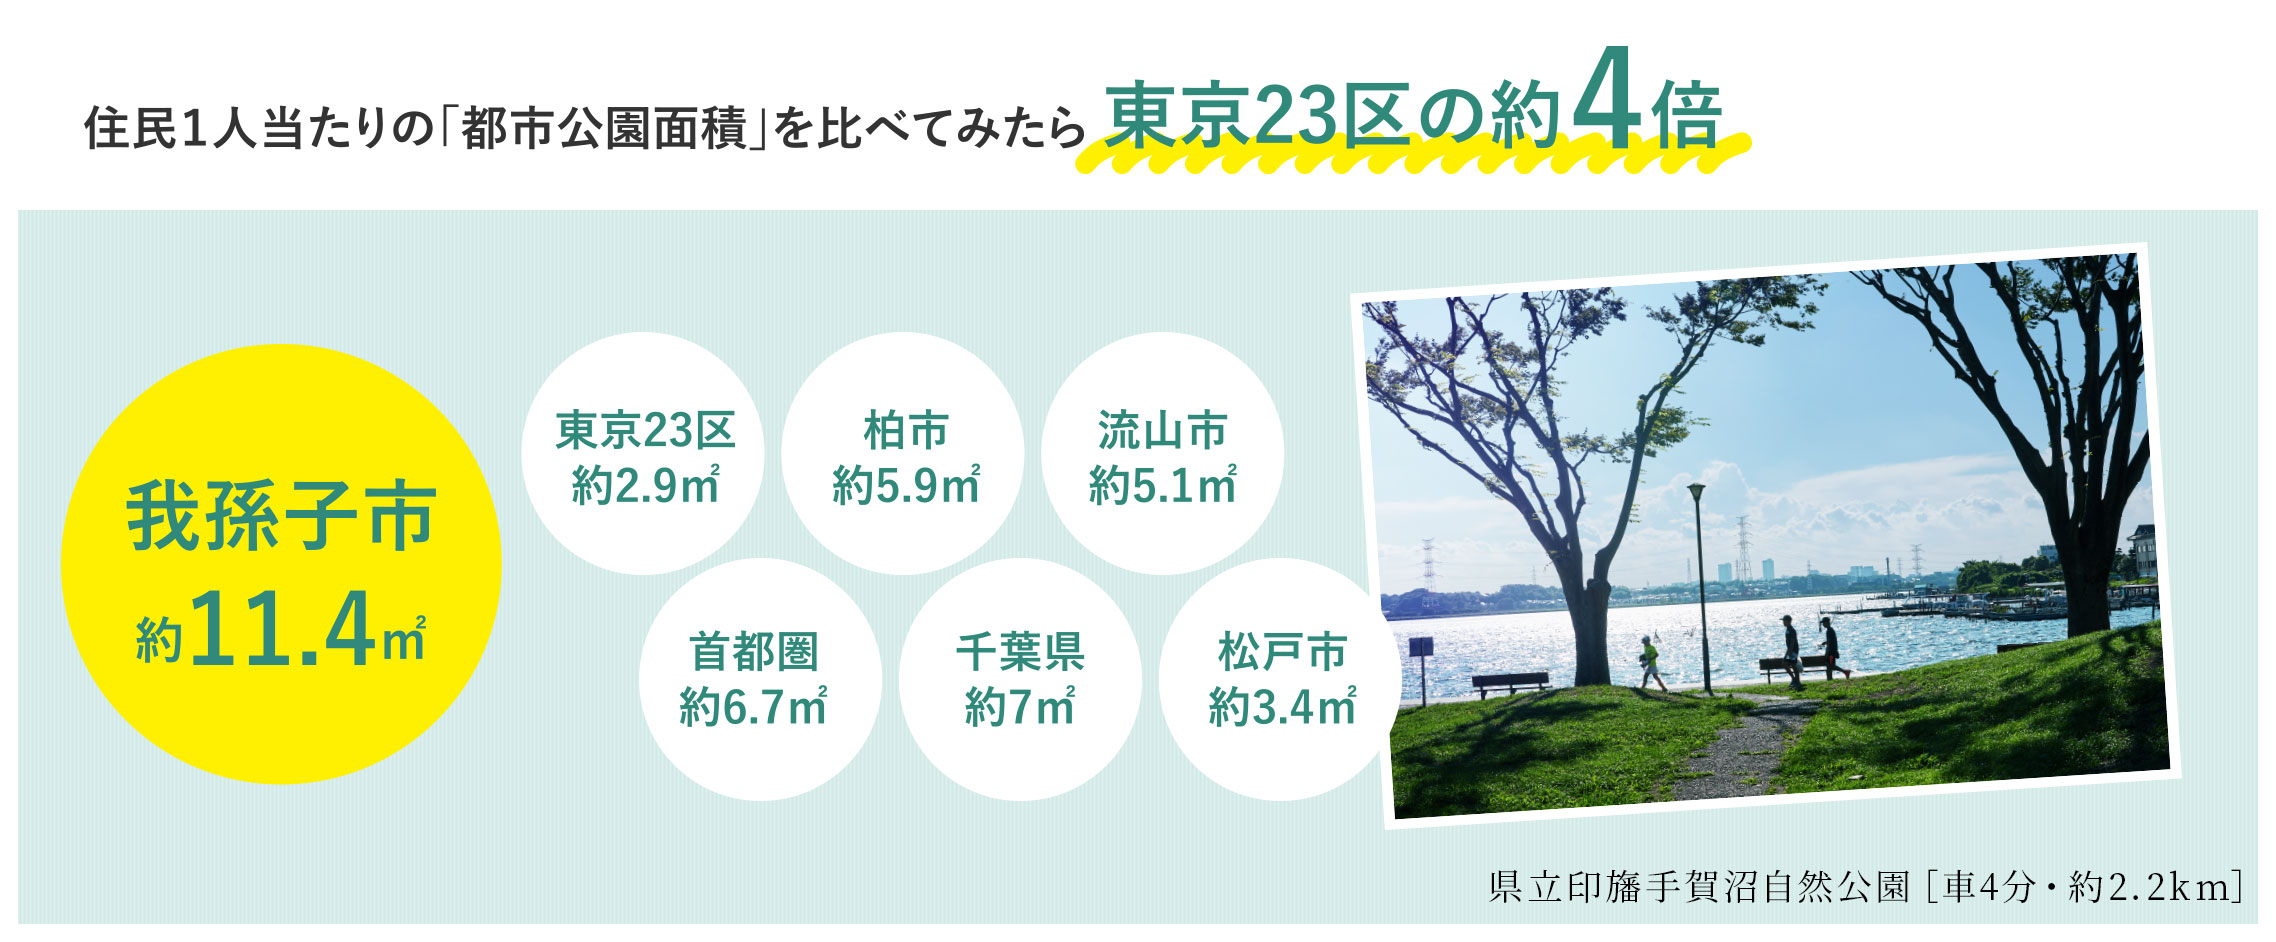 住民1人当たりの「都市公園面積」を比べてみたら東京23区の約4倍